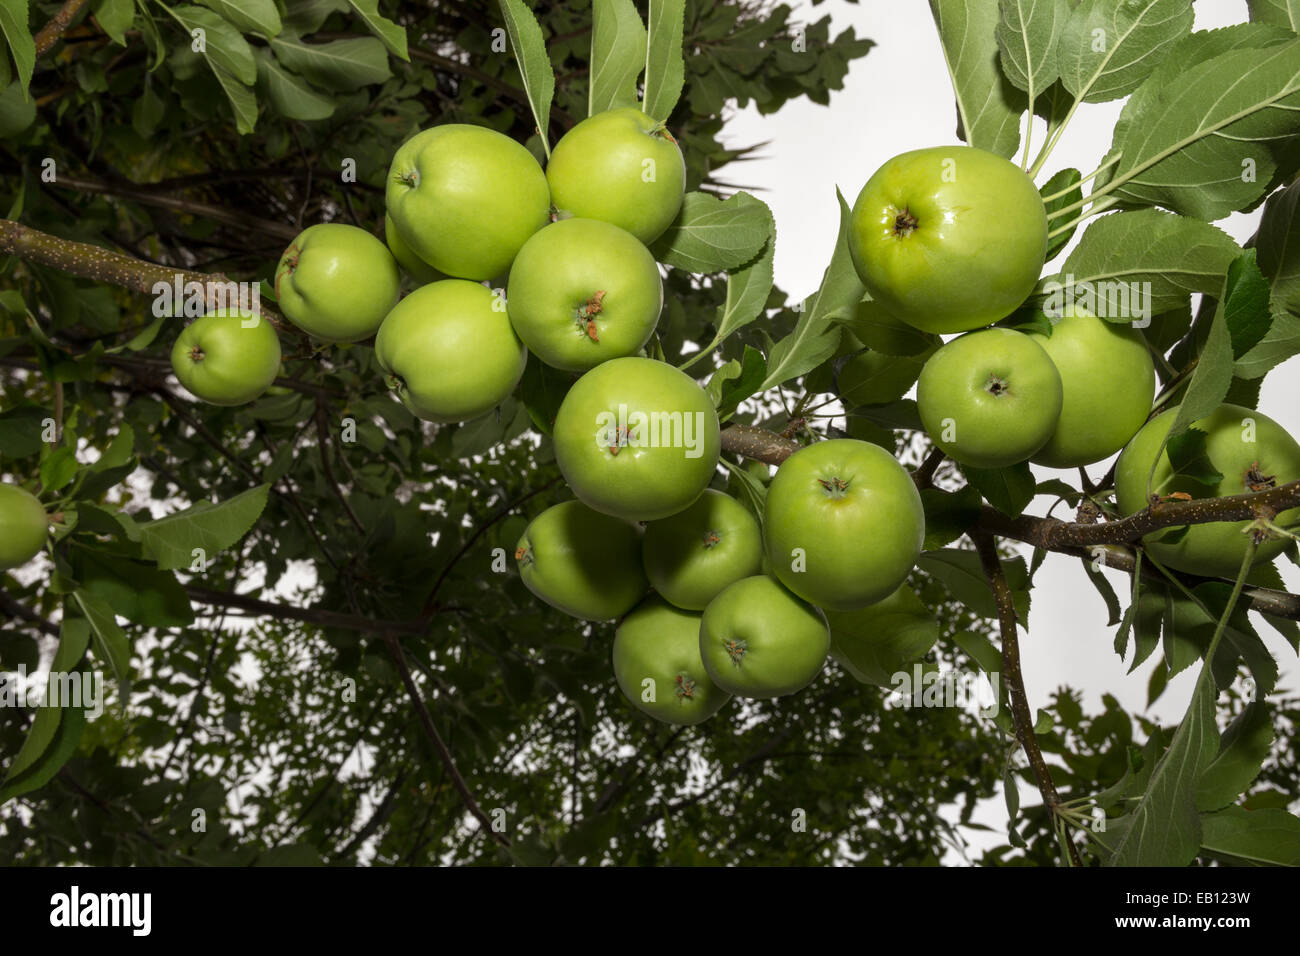 green apple, green apples, apple, apples, apple tree, apple orchard, Malus domestica, Novato, Marin County, California, United States, North America Stock Photo